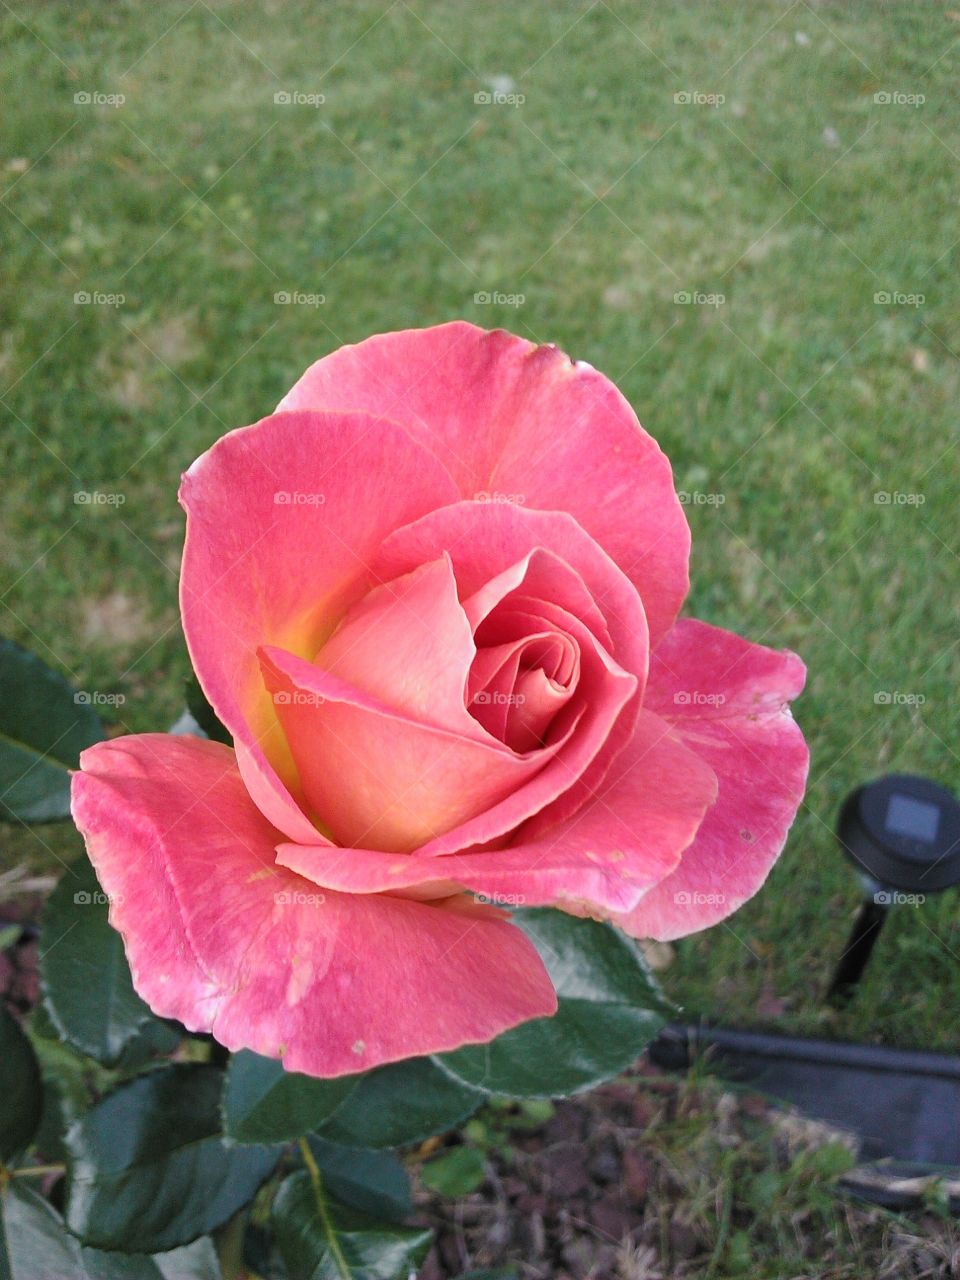 Flower, Rose, Nature, Garden, Petal